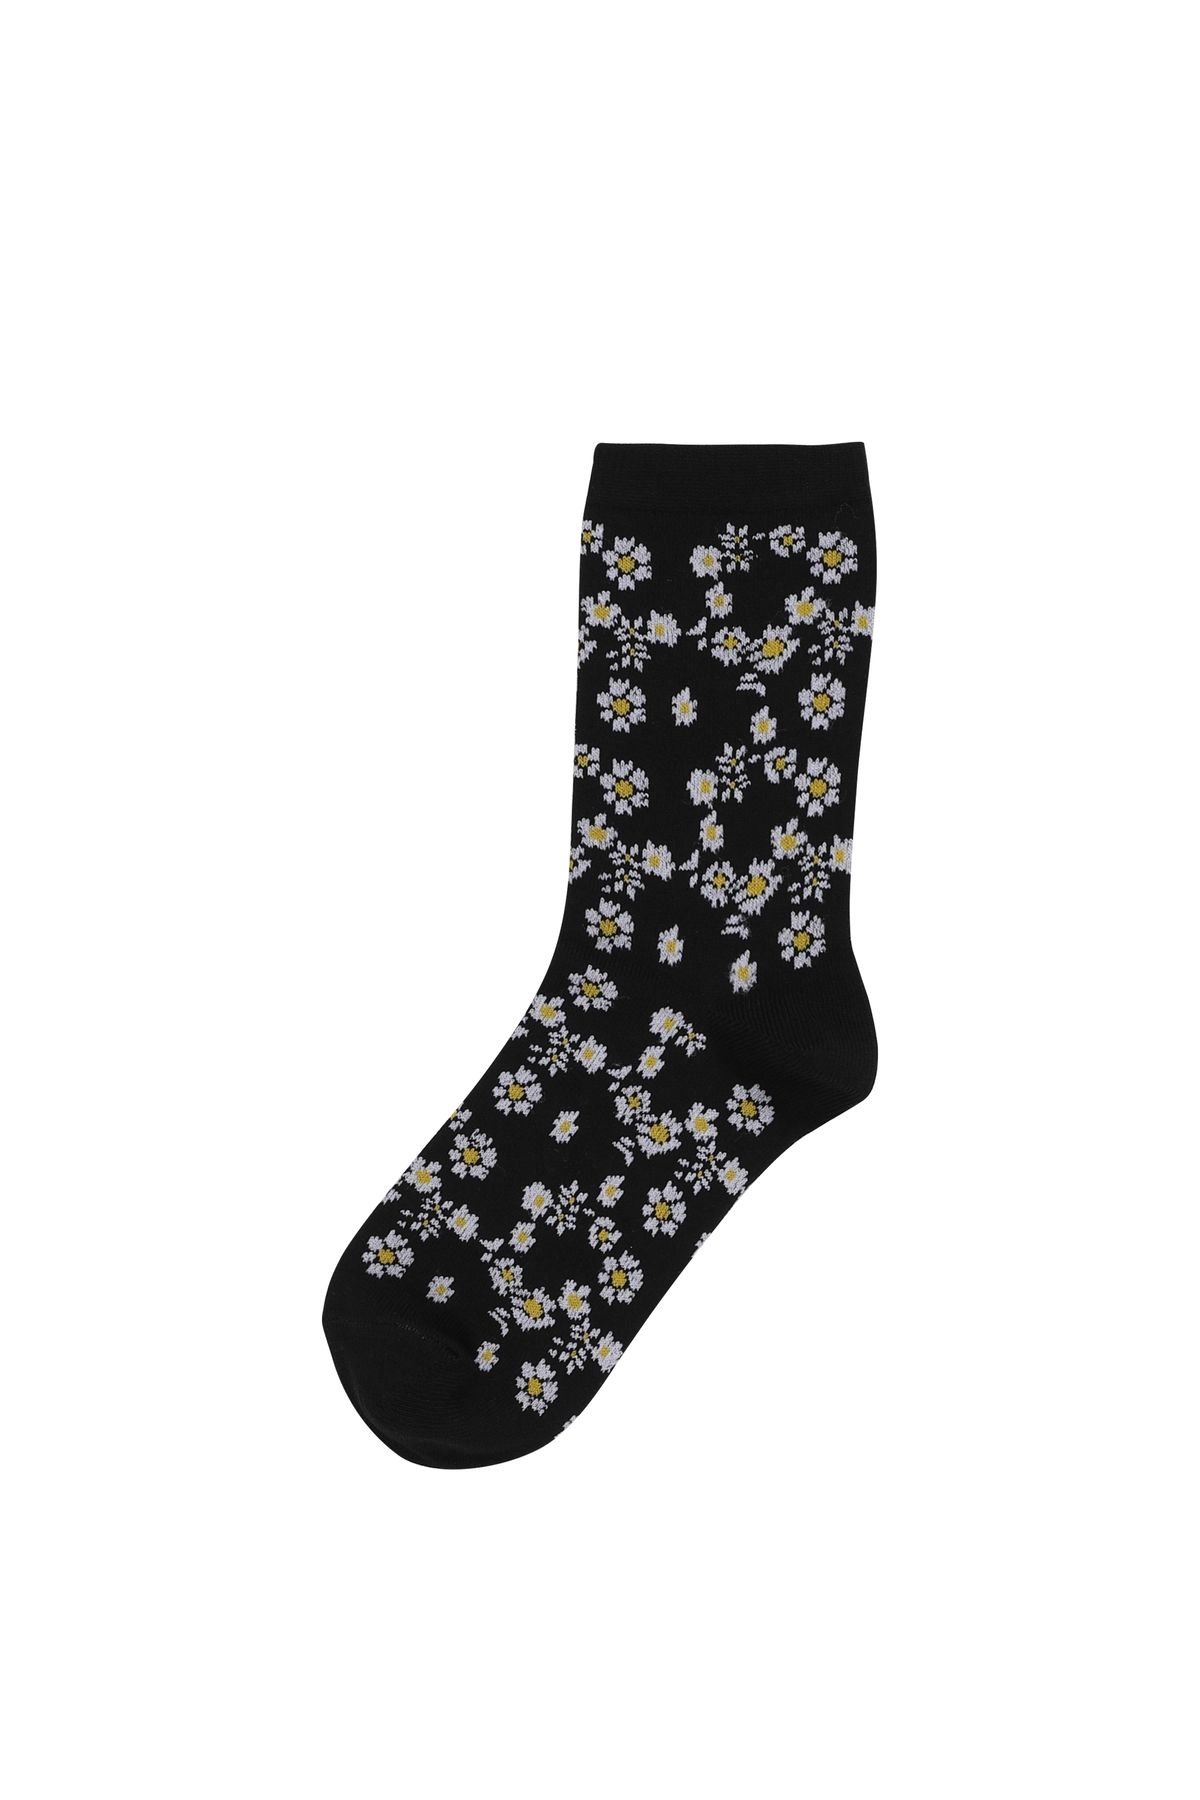 Colin’s Çiçek Baskılı Siyah Kadın Çorap Cl1061160